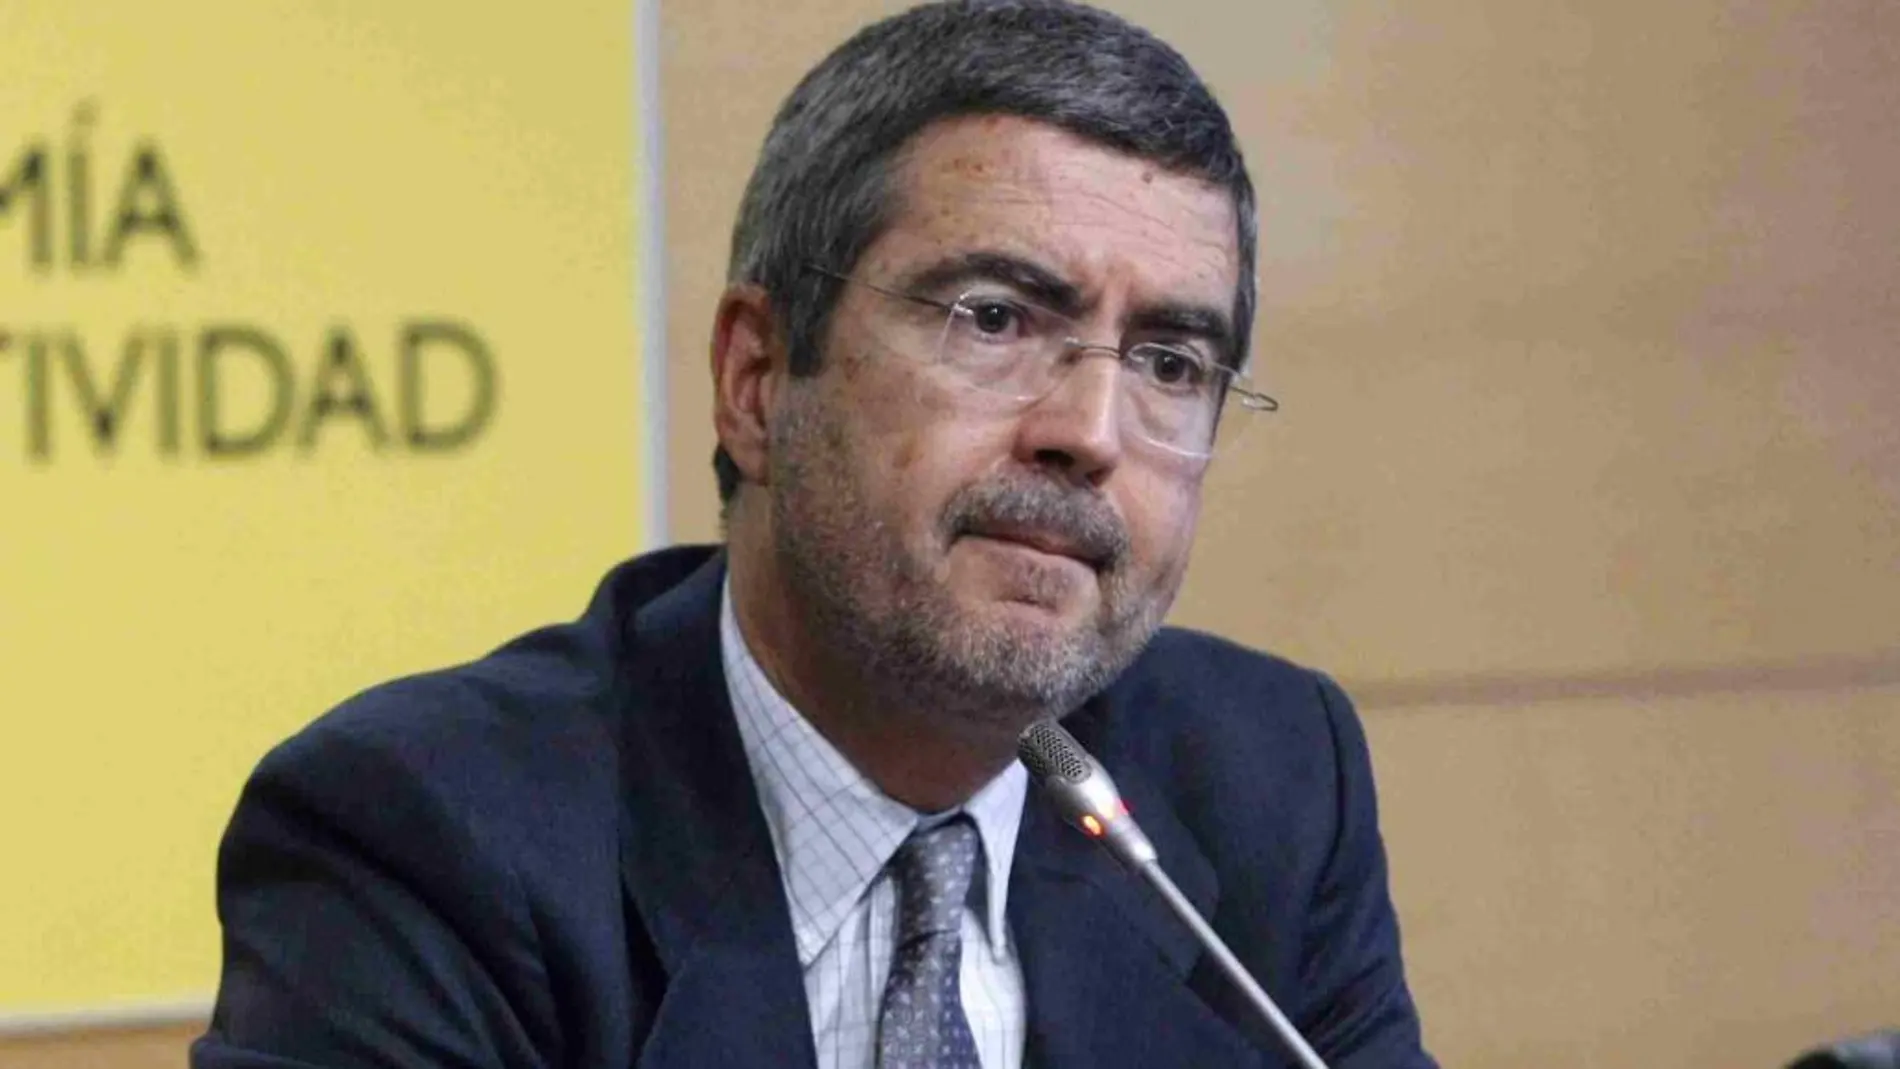 El exsecretario de Estado de Economía y actual director ejecutivo del FMI, Fernando Jiménez Latorre, en una imagen de archivo.